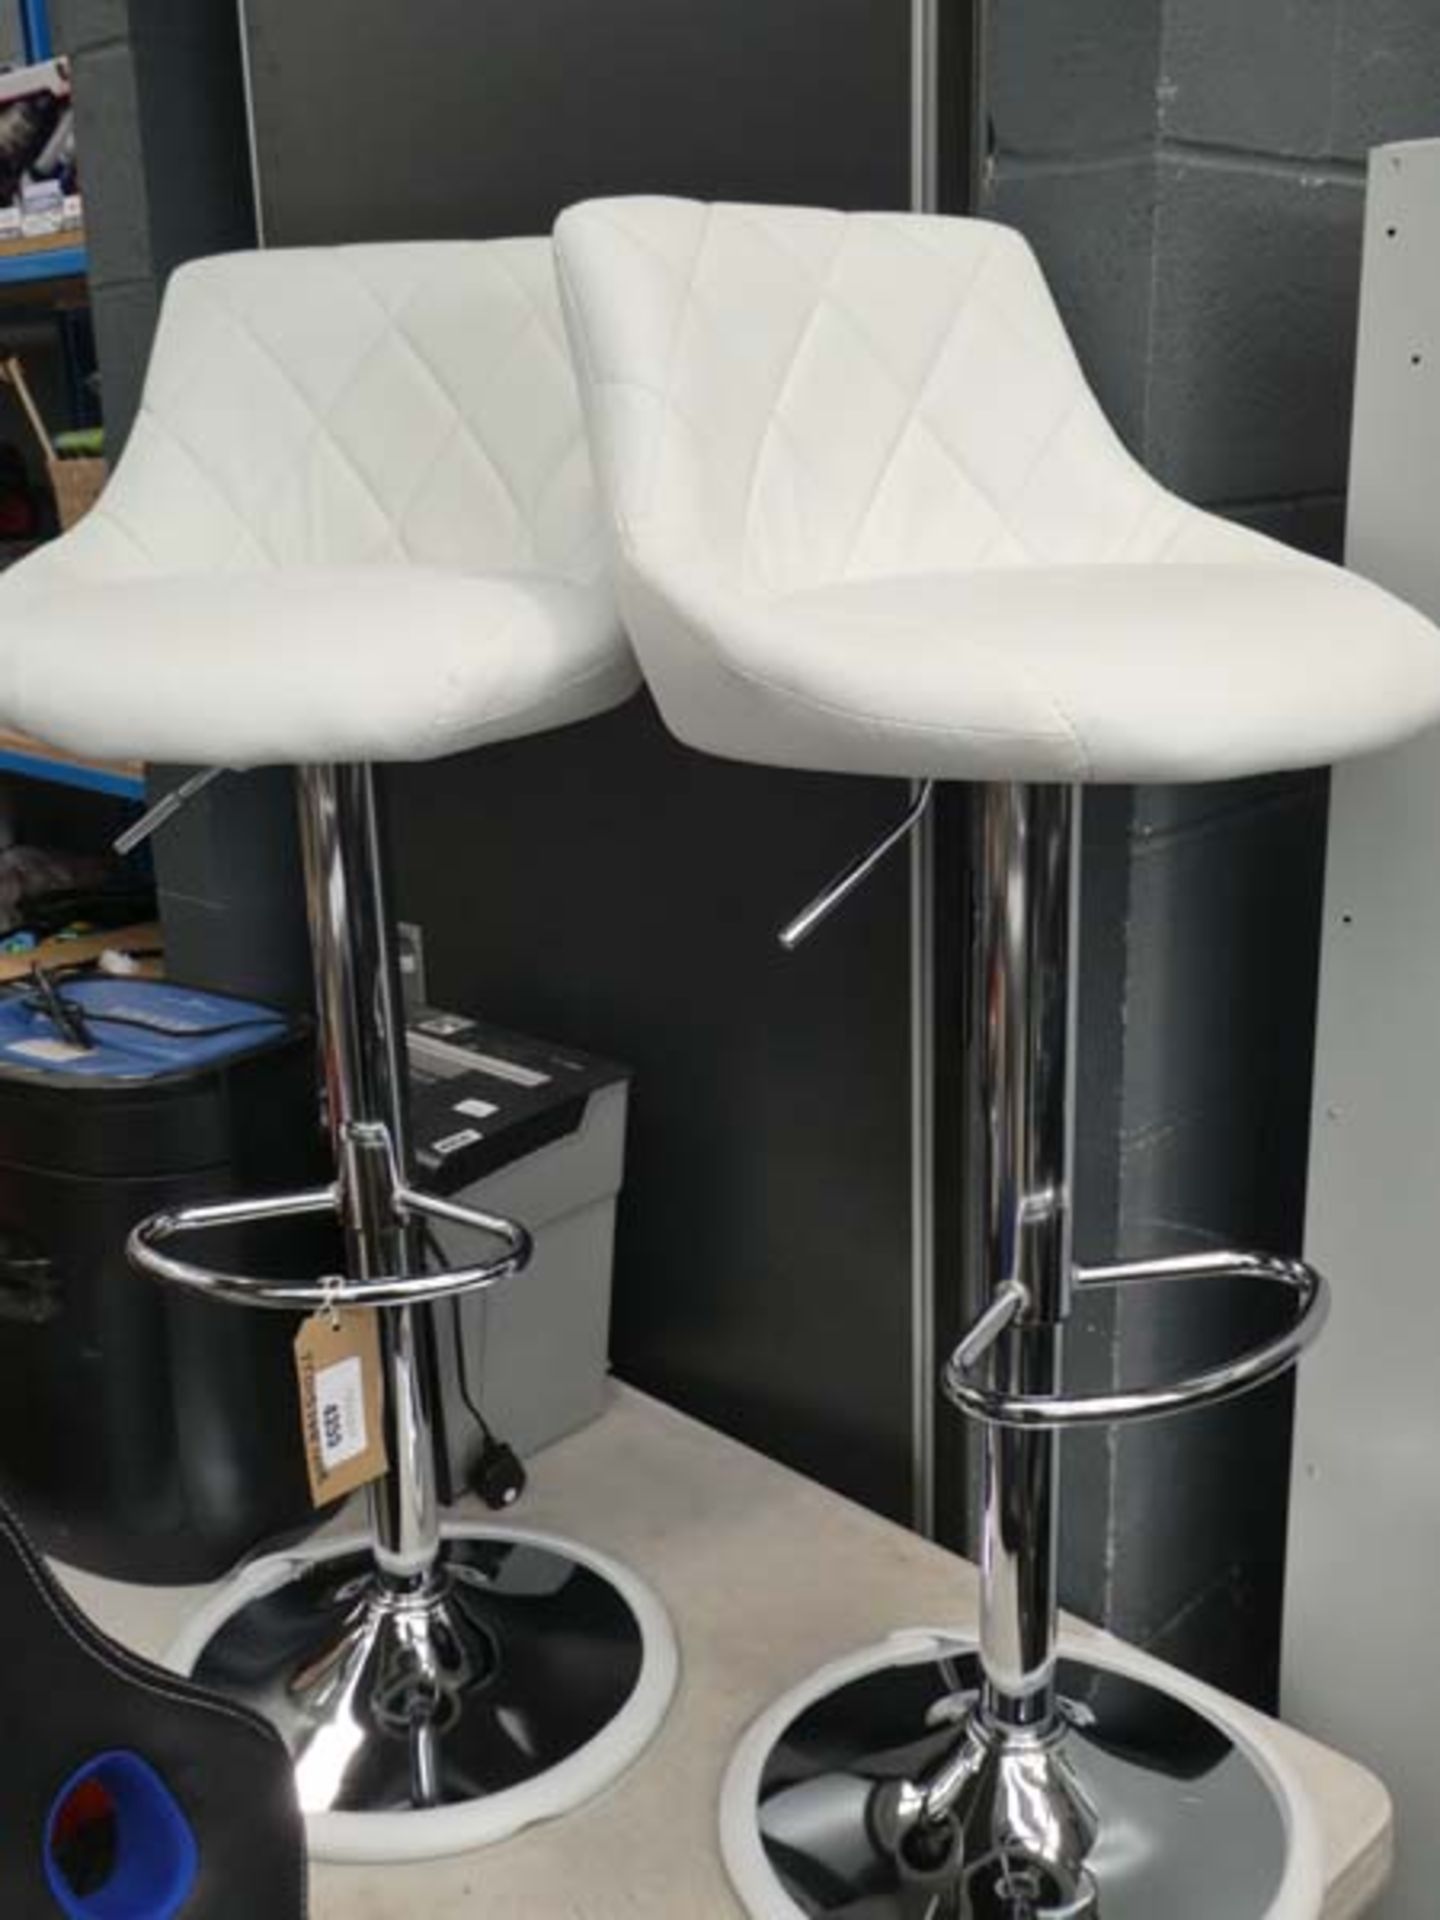 2 white chrome framed bar stools